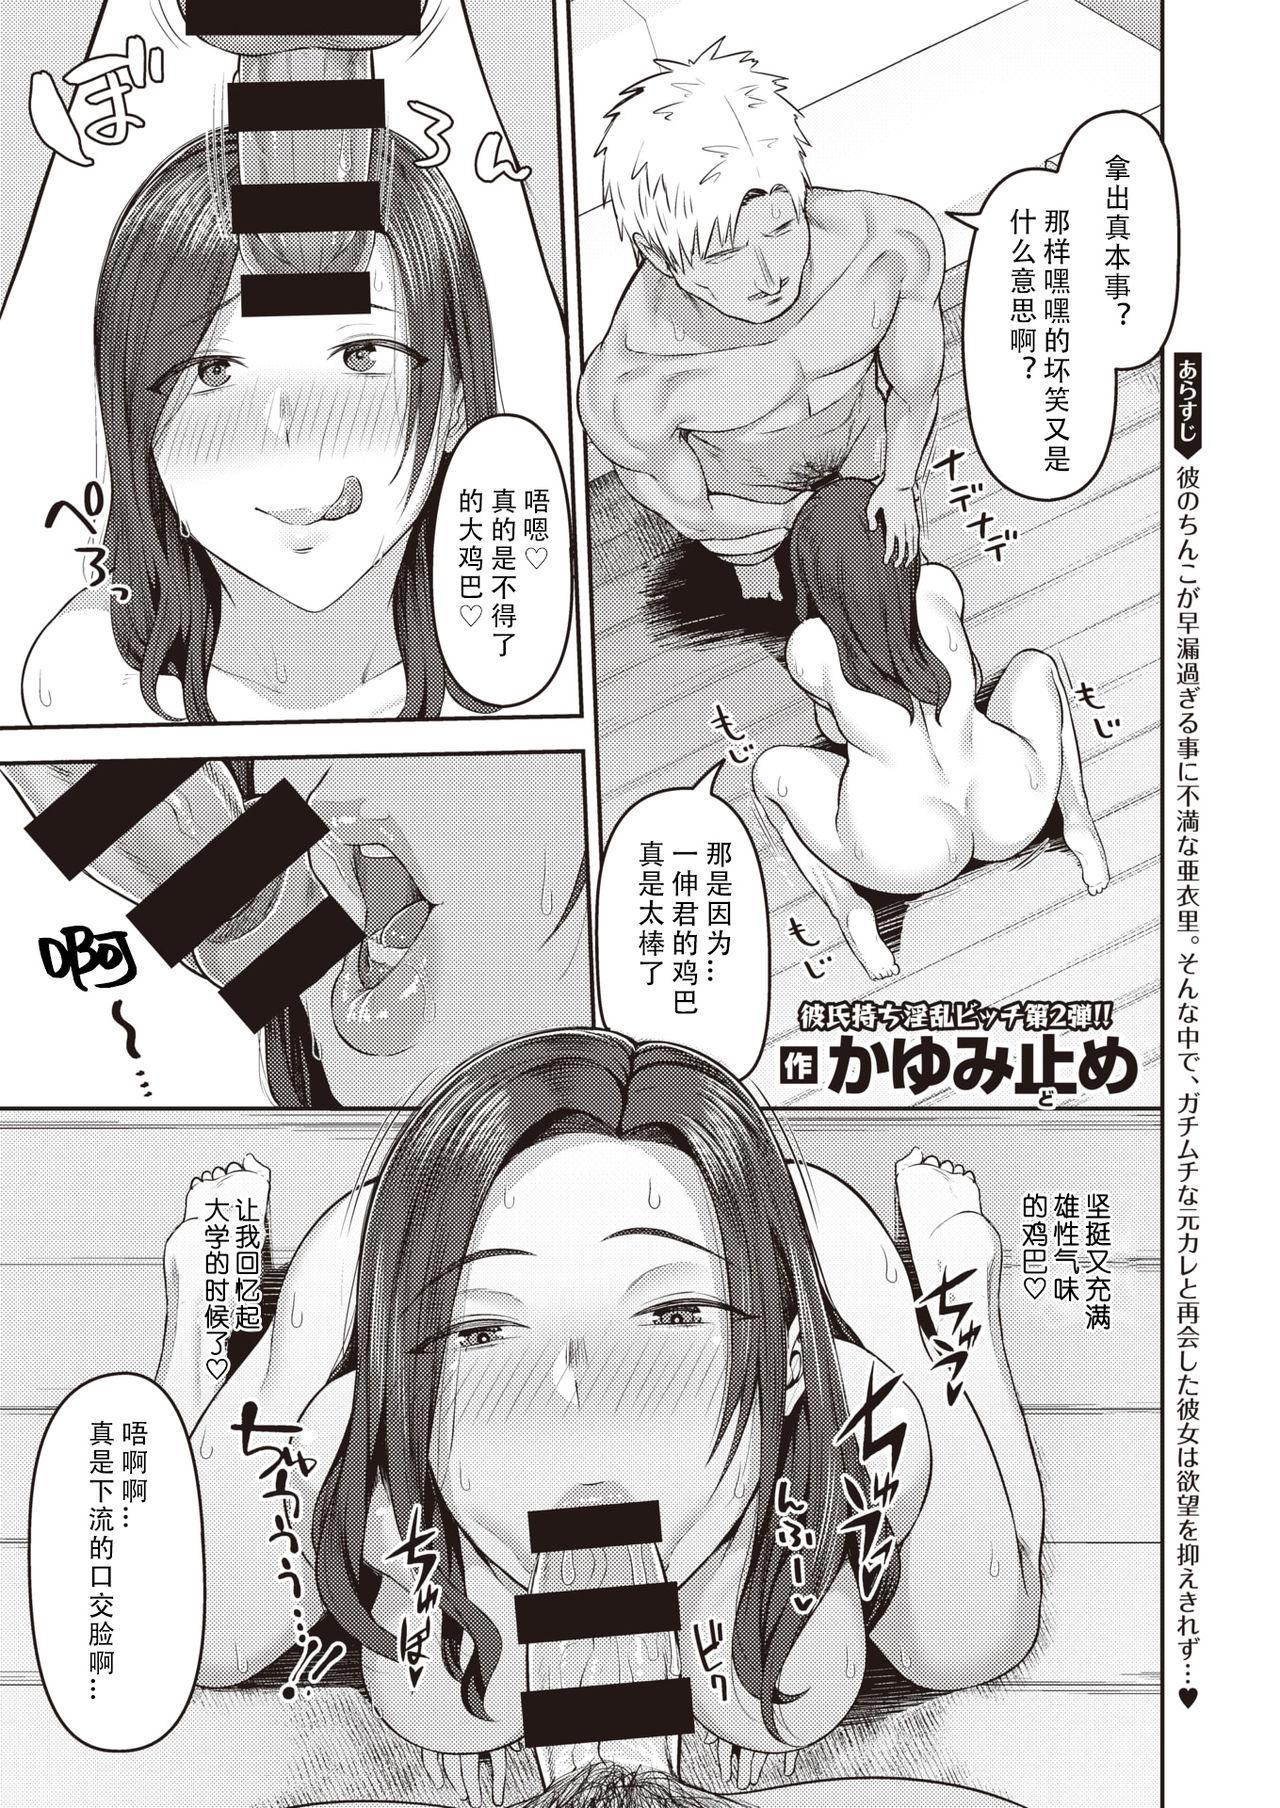 Famosa Dekachin ga Suki #2 Straight - Page 2